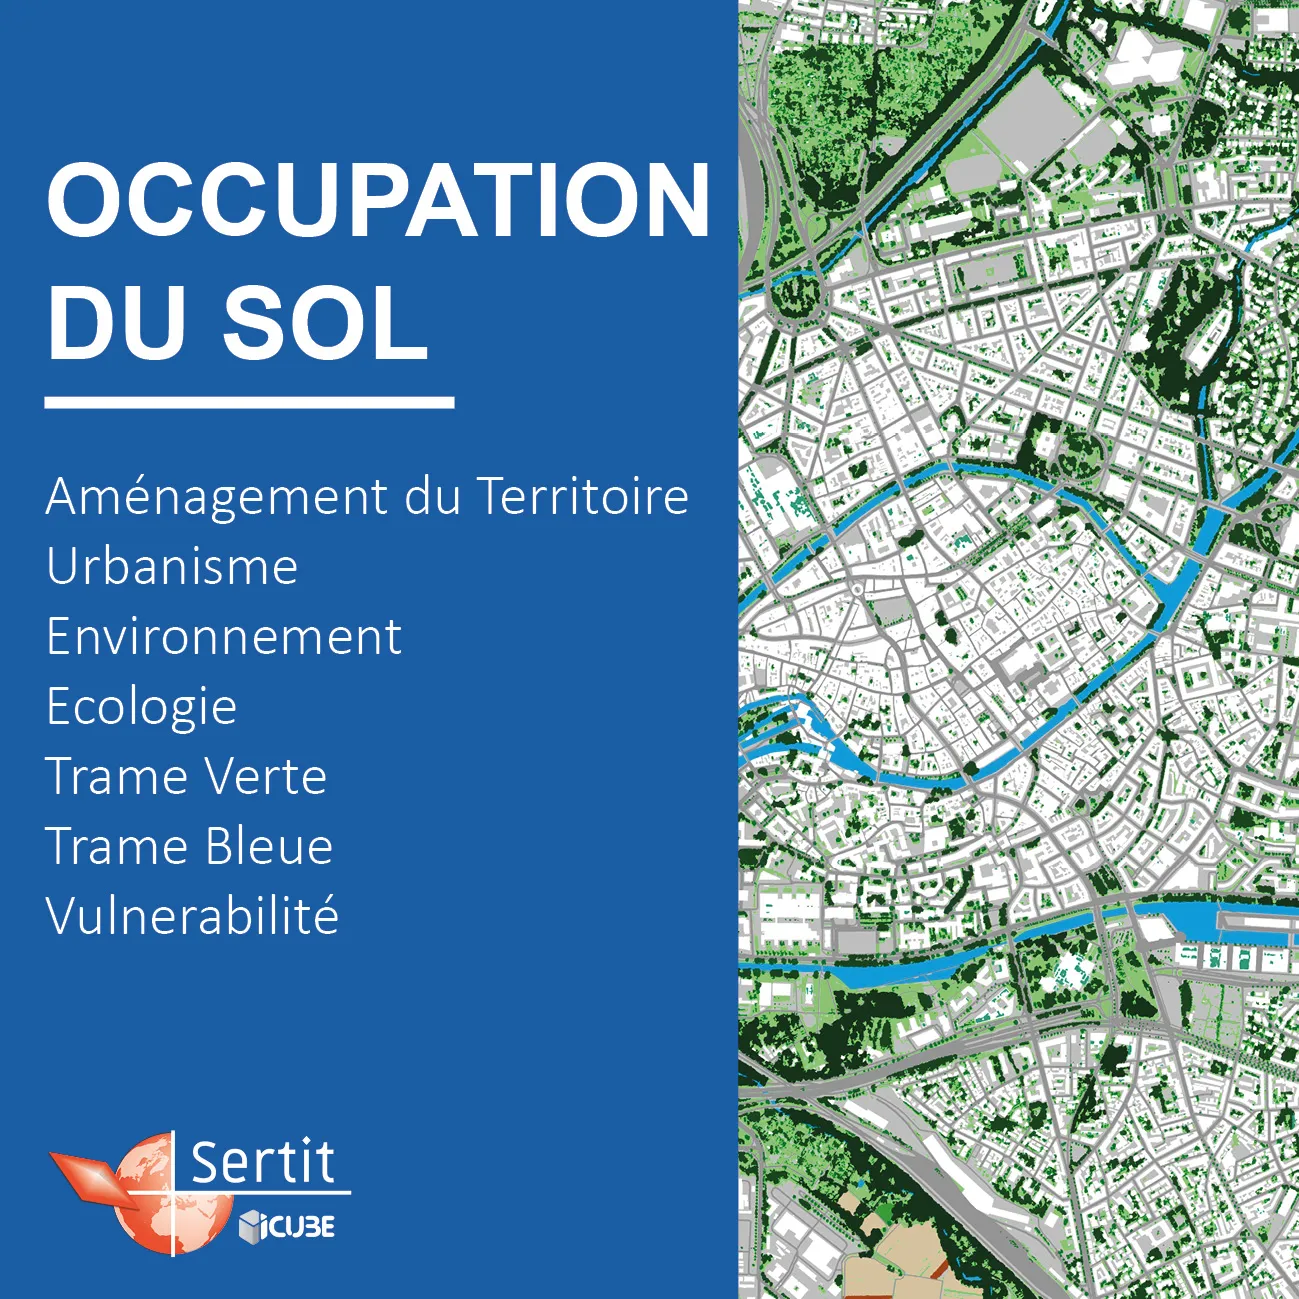 Occupation du sol: Aménagement du Territoire, Urbanisme, Environnement, Ecologie, Trame Verte, Trame Bleue